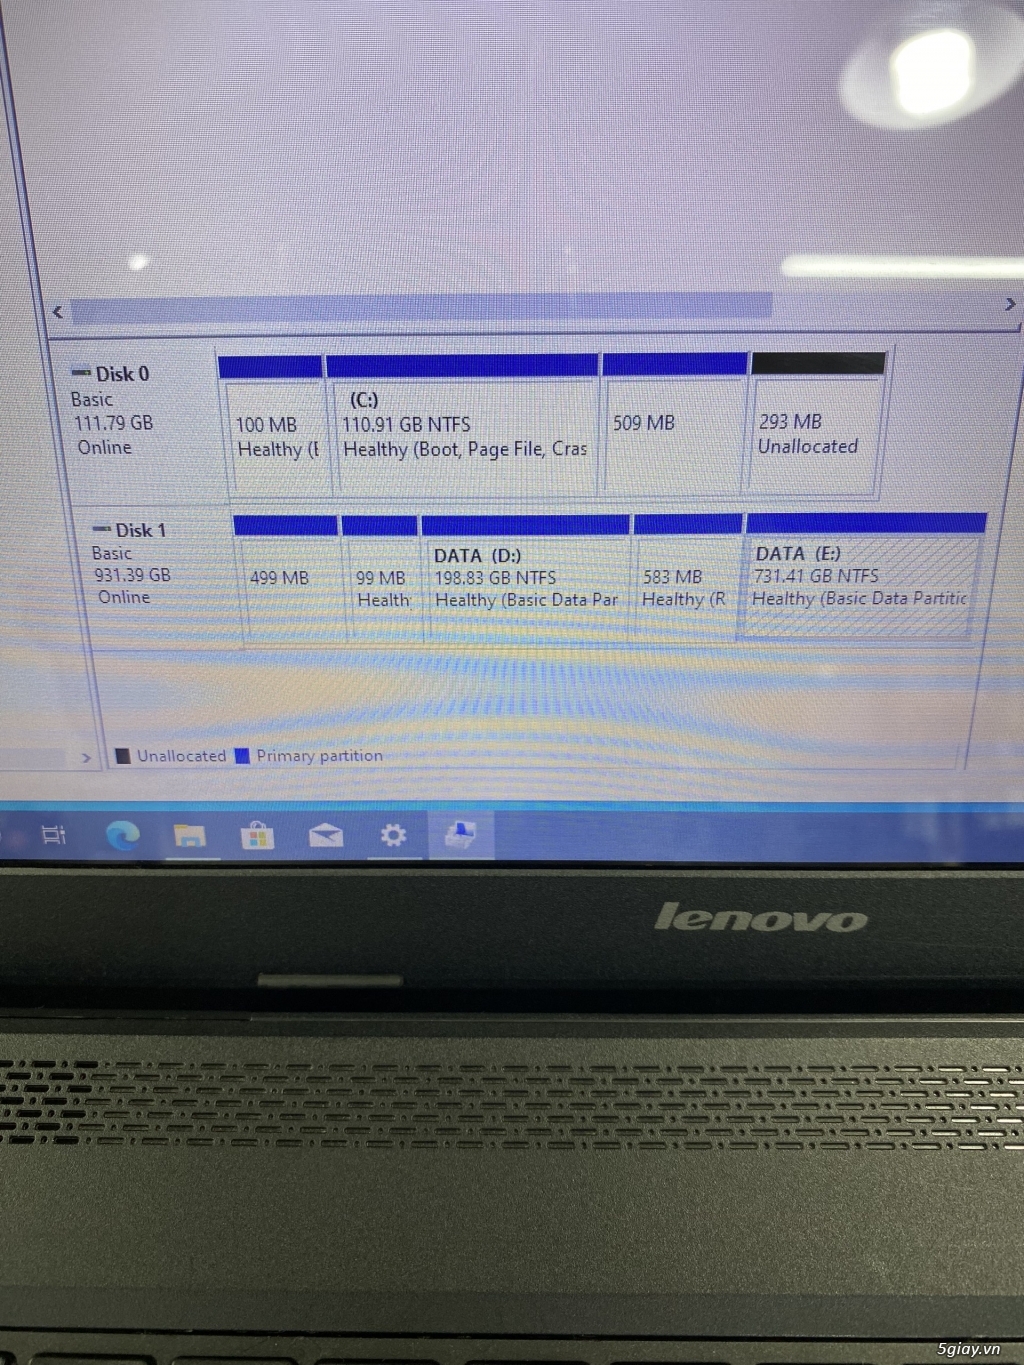 Cần bán Laptop Lenovo G410 i7 4700MQ giá rẽ bèo - 5